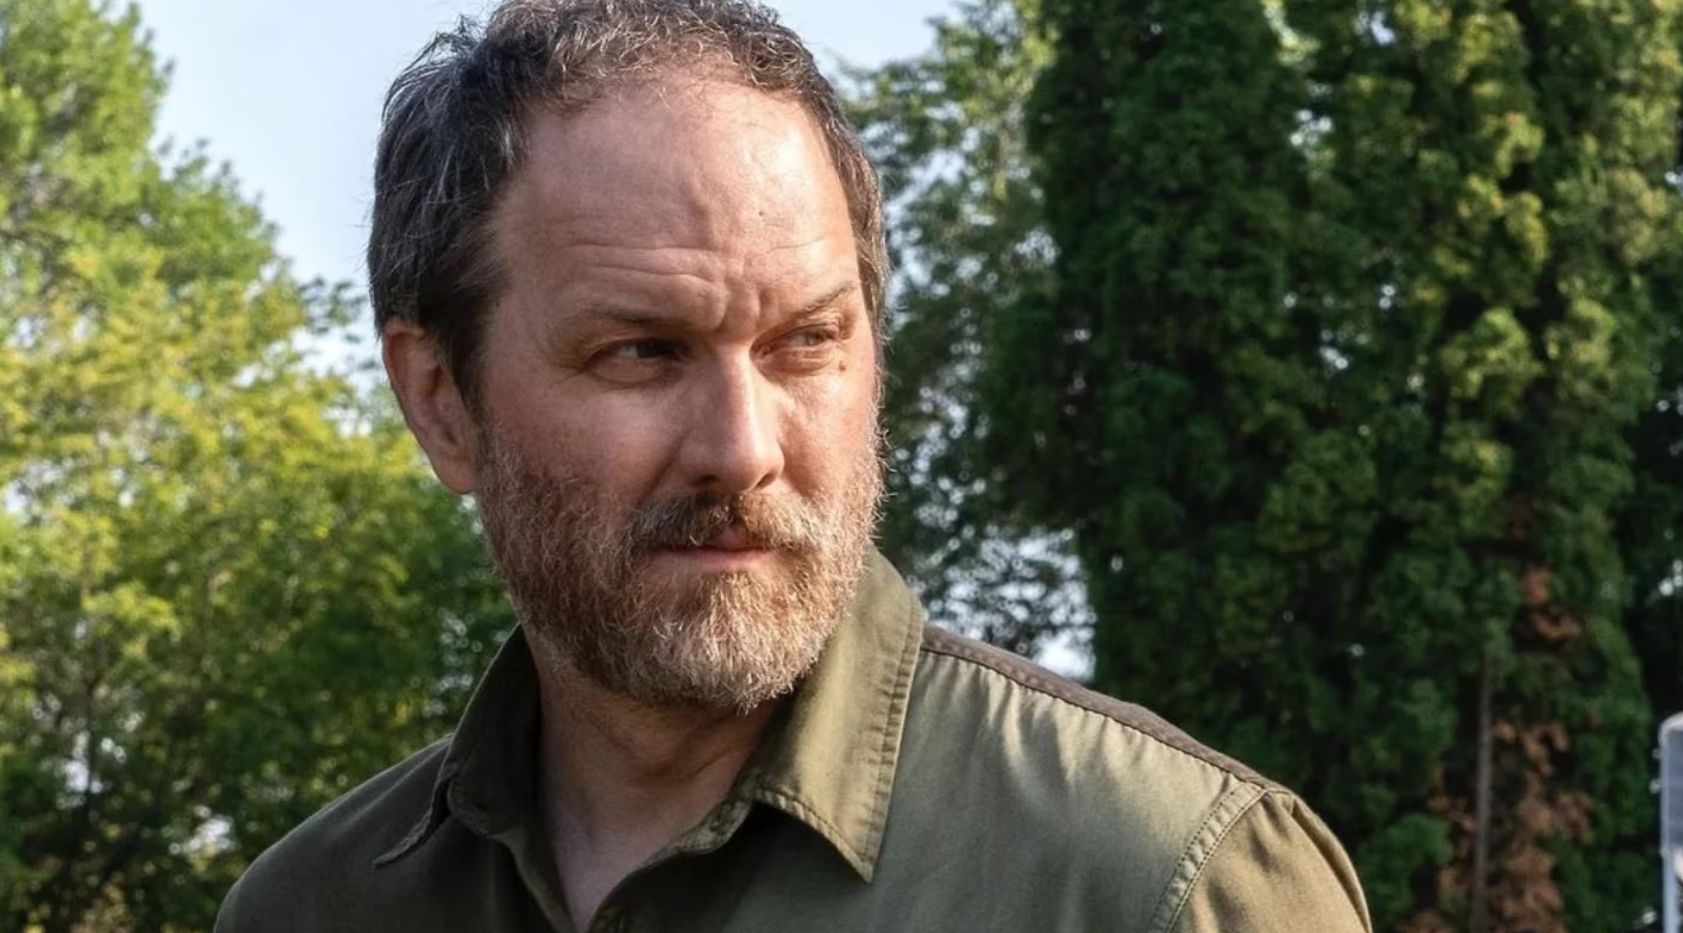 El actor de The Walking Dead Erik Jensen reveló que tiene cáncer en una etapa muy avanzada.